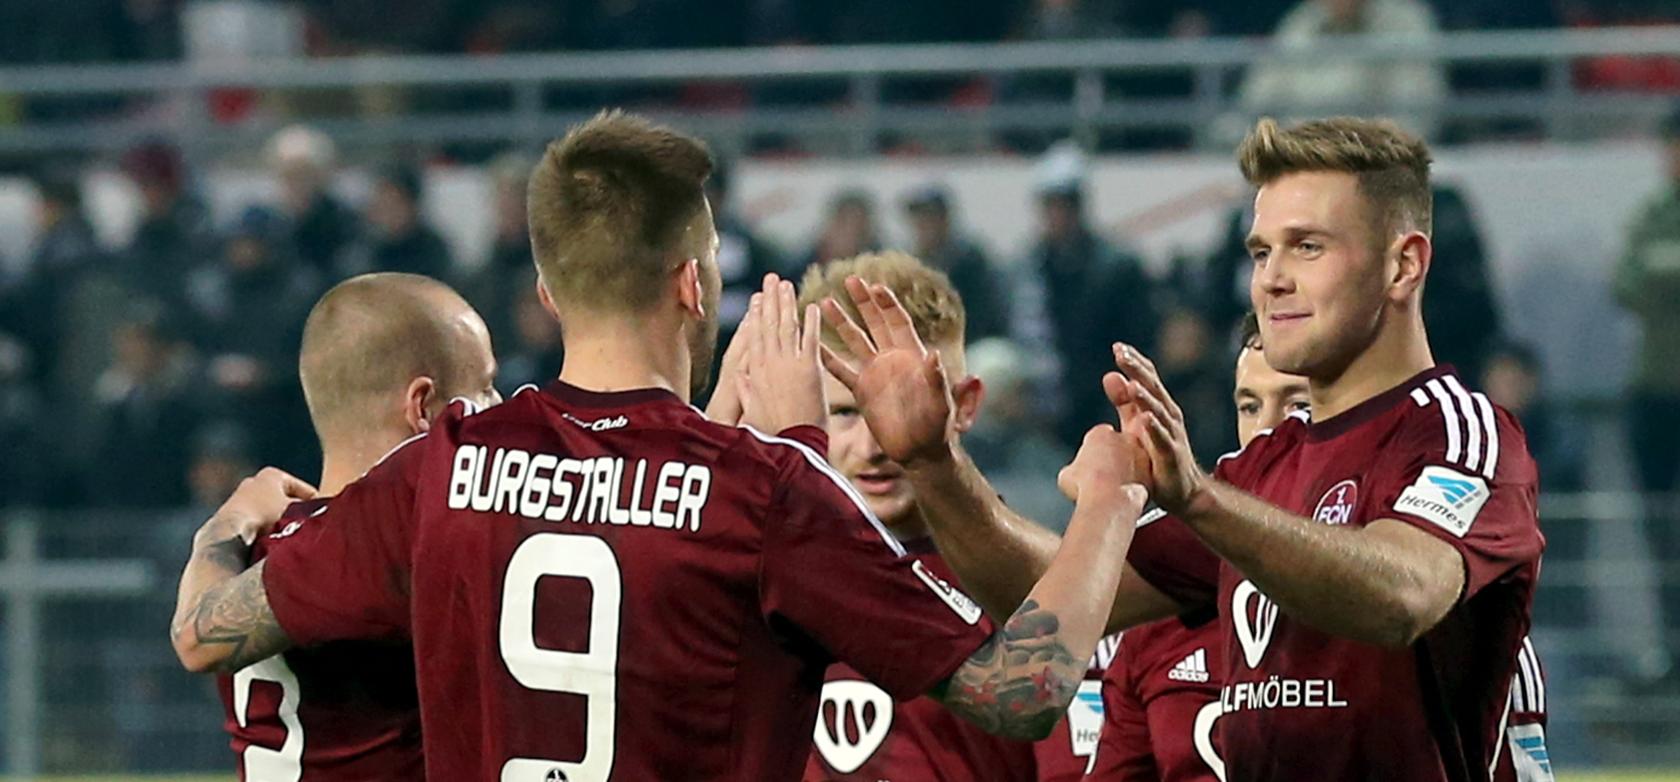 Der 1. FC Nürnberg bleibt durch den 2:0-Erfolg in Sandhausen ein ganz heißer Aufstiegskandidat.